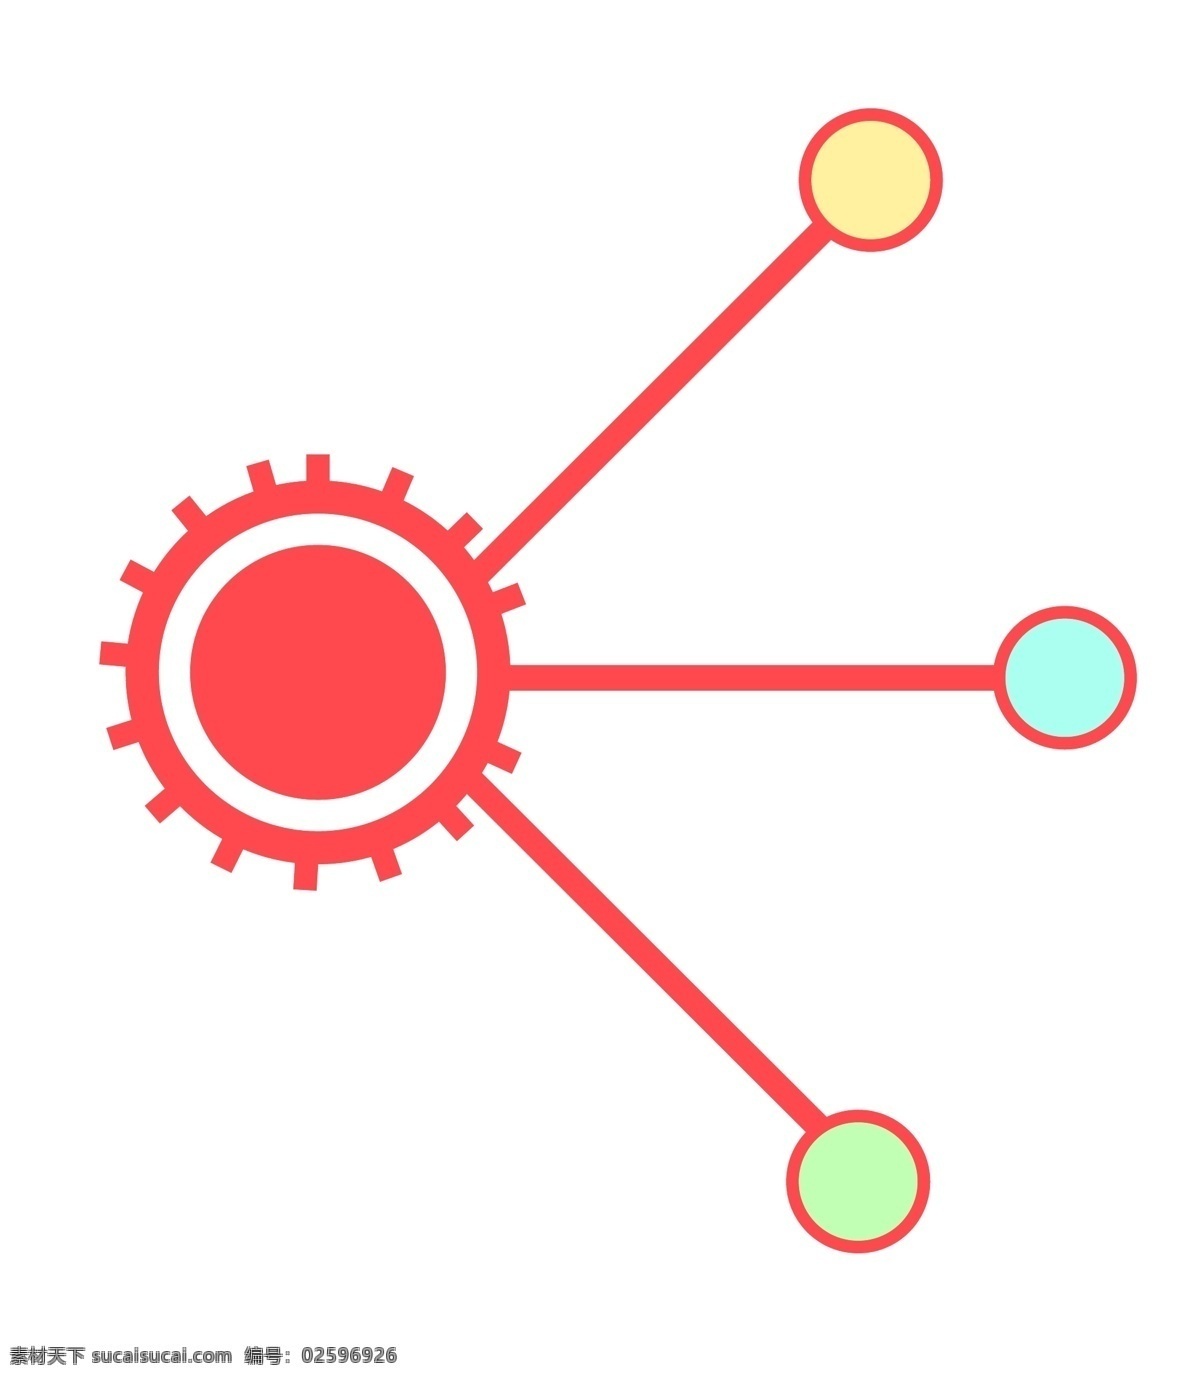 圆形 分析 图案 插图 数据分析 分析图案 ppt图案 红色装饰 简约的设计 变色圆圈 红色直线 直线立体